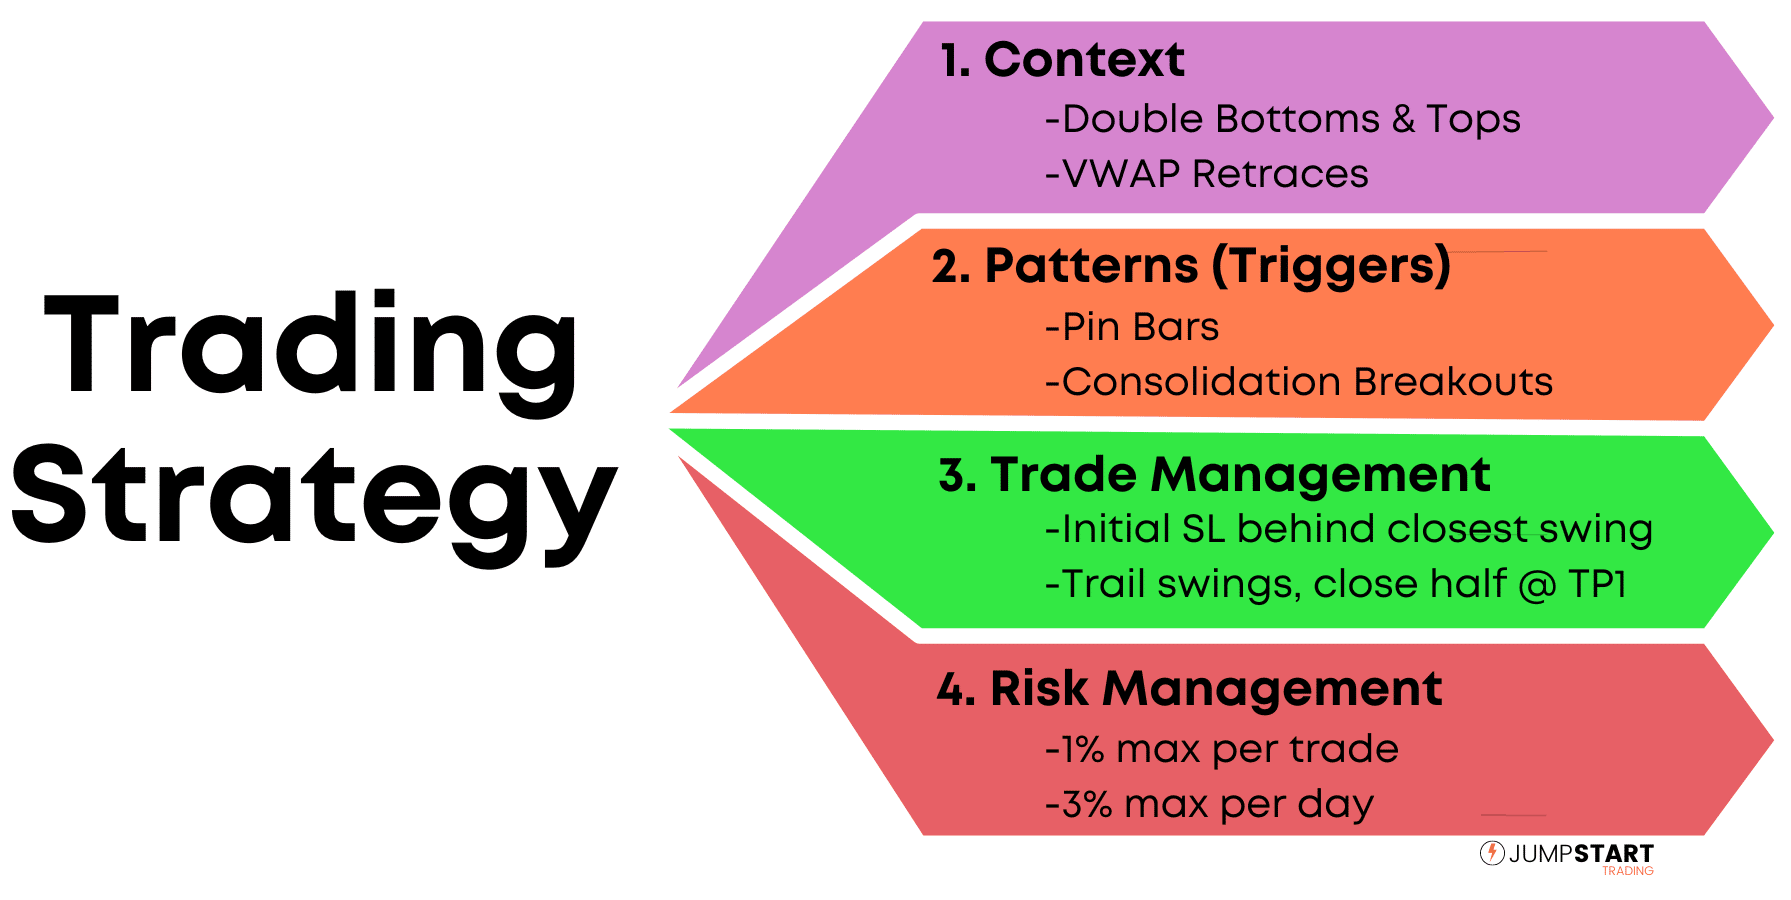 Lista de componentes de la estrategia comercial, incluidos el contexto, los patrones, la gestión comercial y la gestión de riesgos